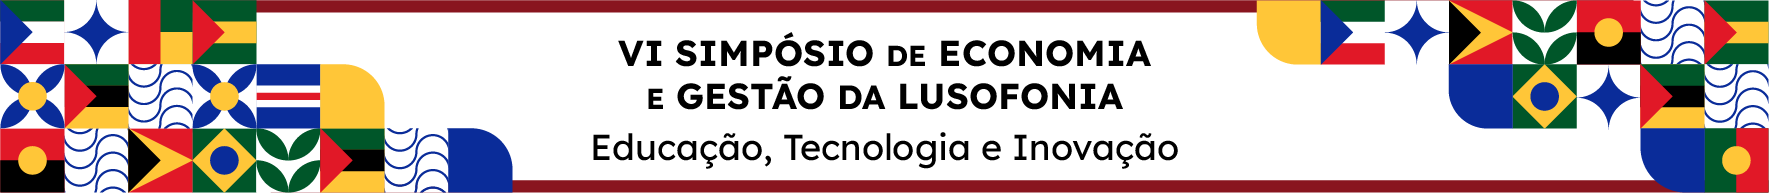 VI Simpósio de Economia e Gestão da Lusofonia - Educação, Tecnologia e Inovação